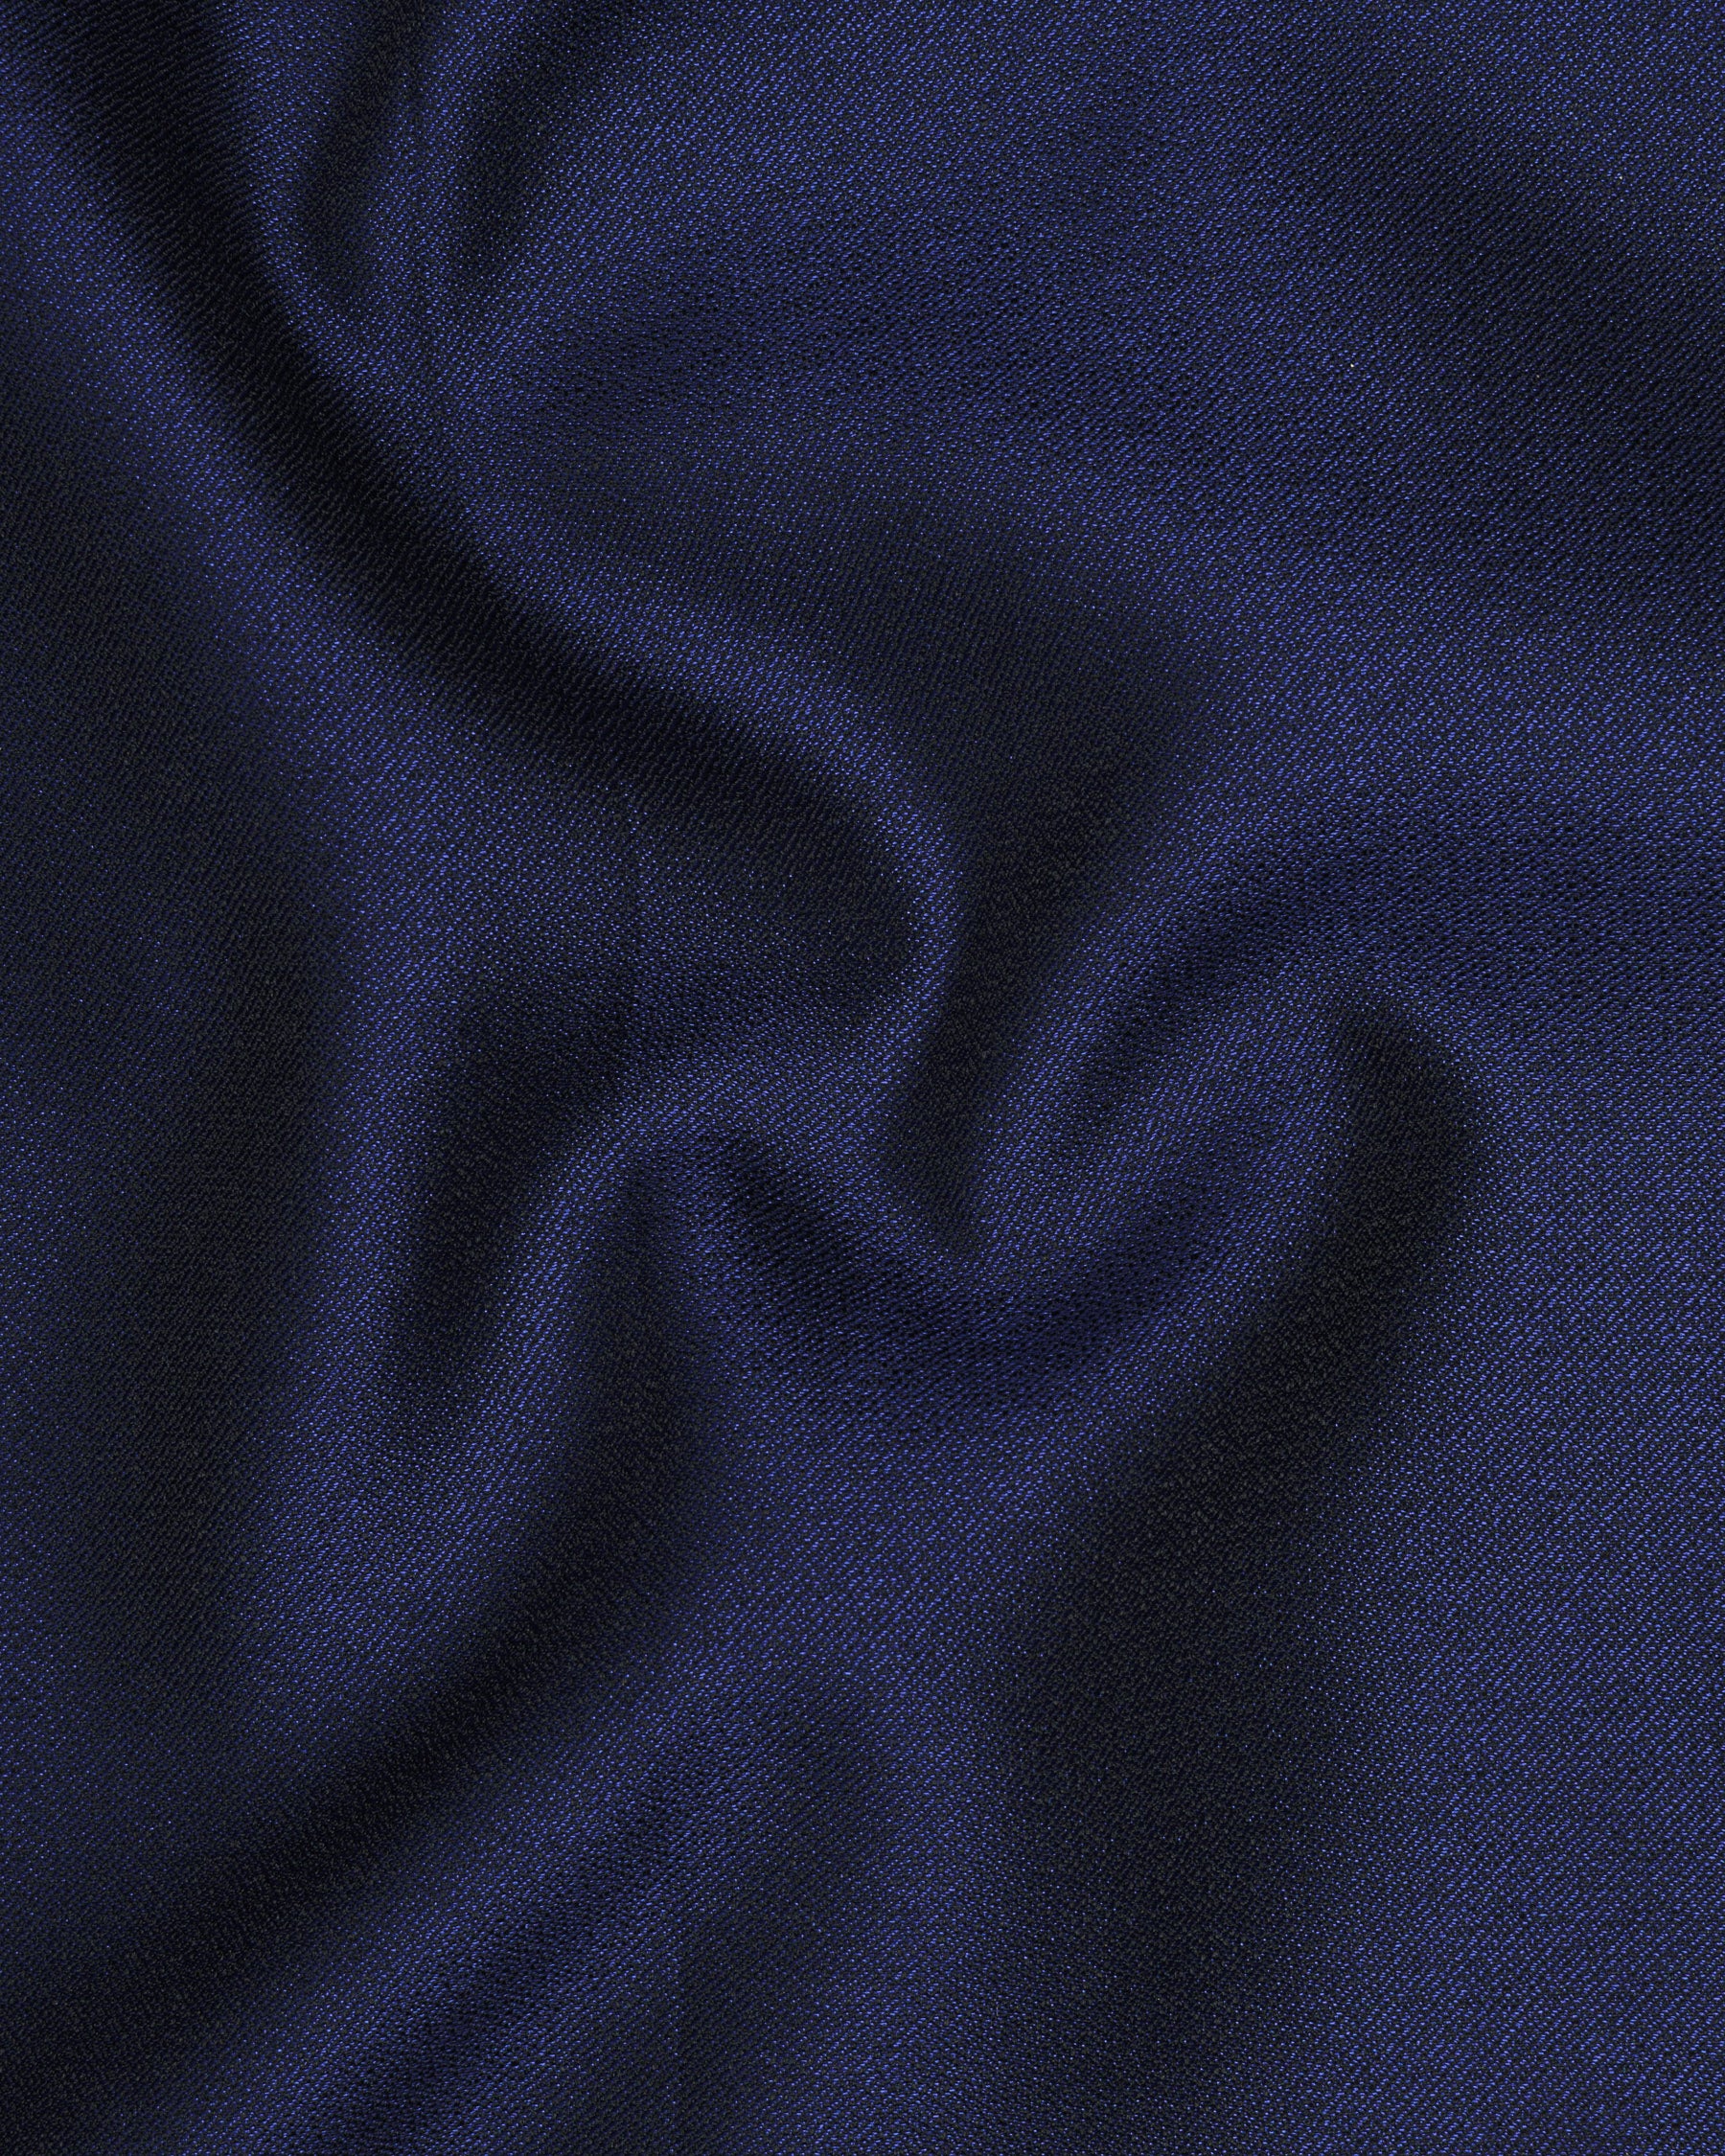 Cloud Burst Blue Textured  Nehru Jacket WC1684-36, WC1684-38, WC1684-40, WC1684-42, WC1684-44, WC1684-46, WC1684-48, WC1684-50, WC1684-52, WC1684-54, WC1684-56, WC1684-58, WC1684-60